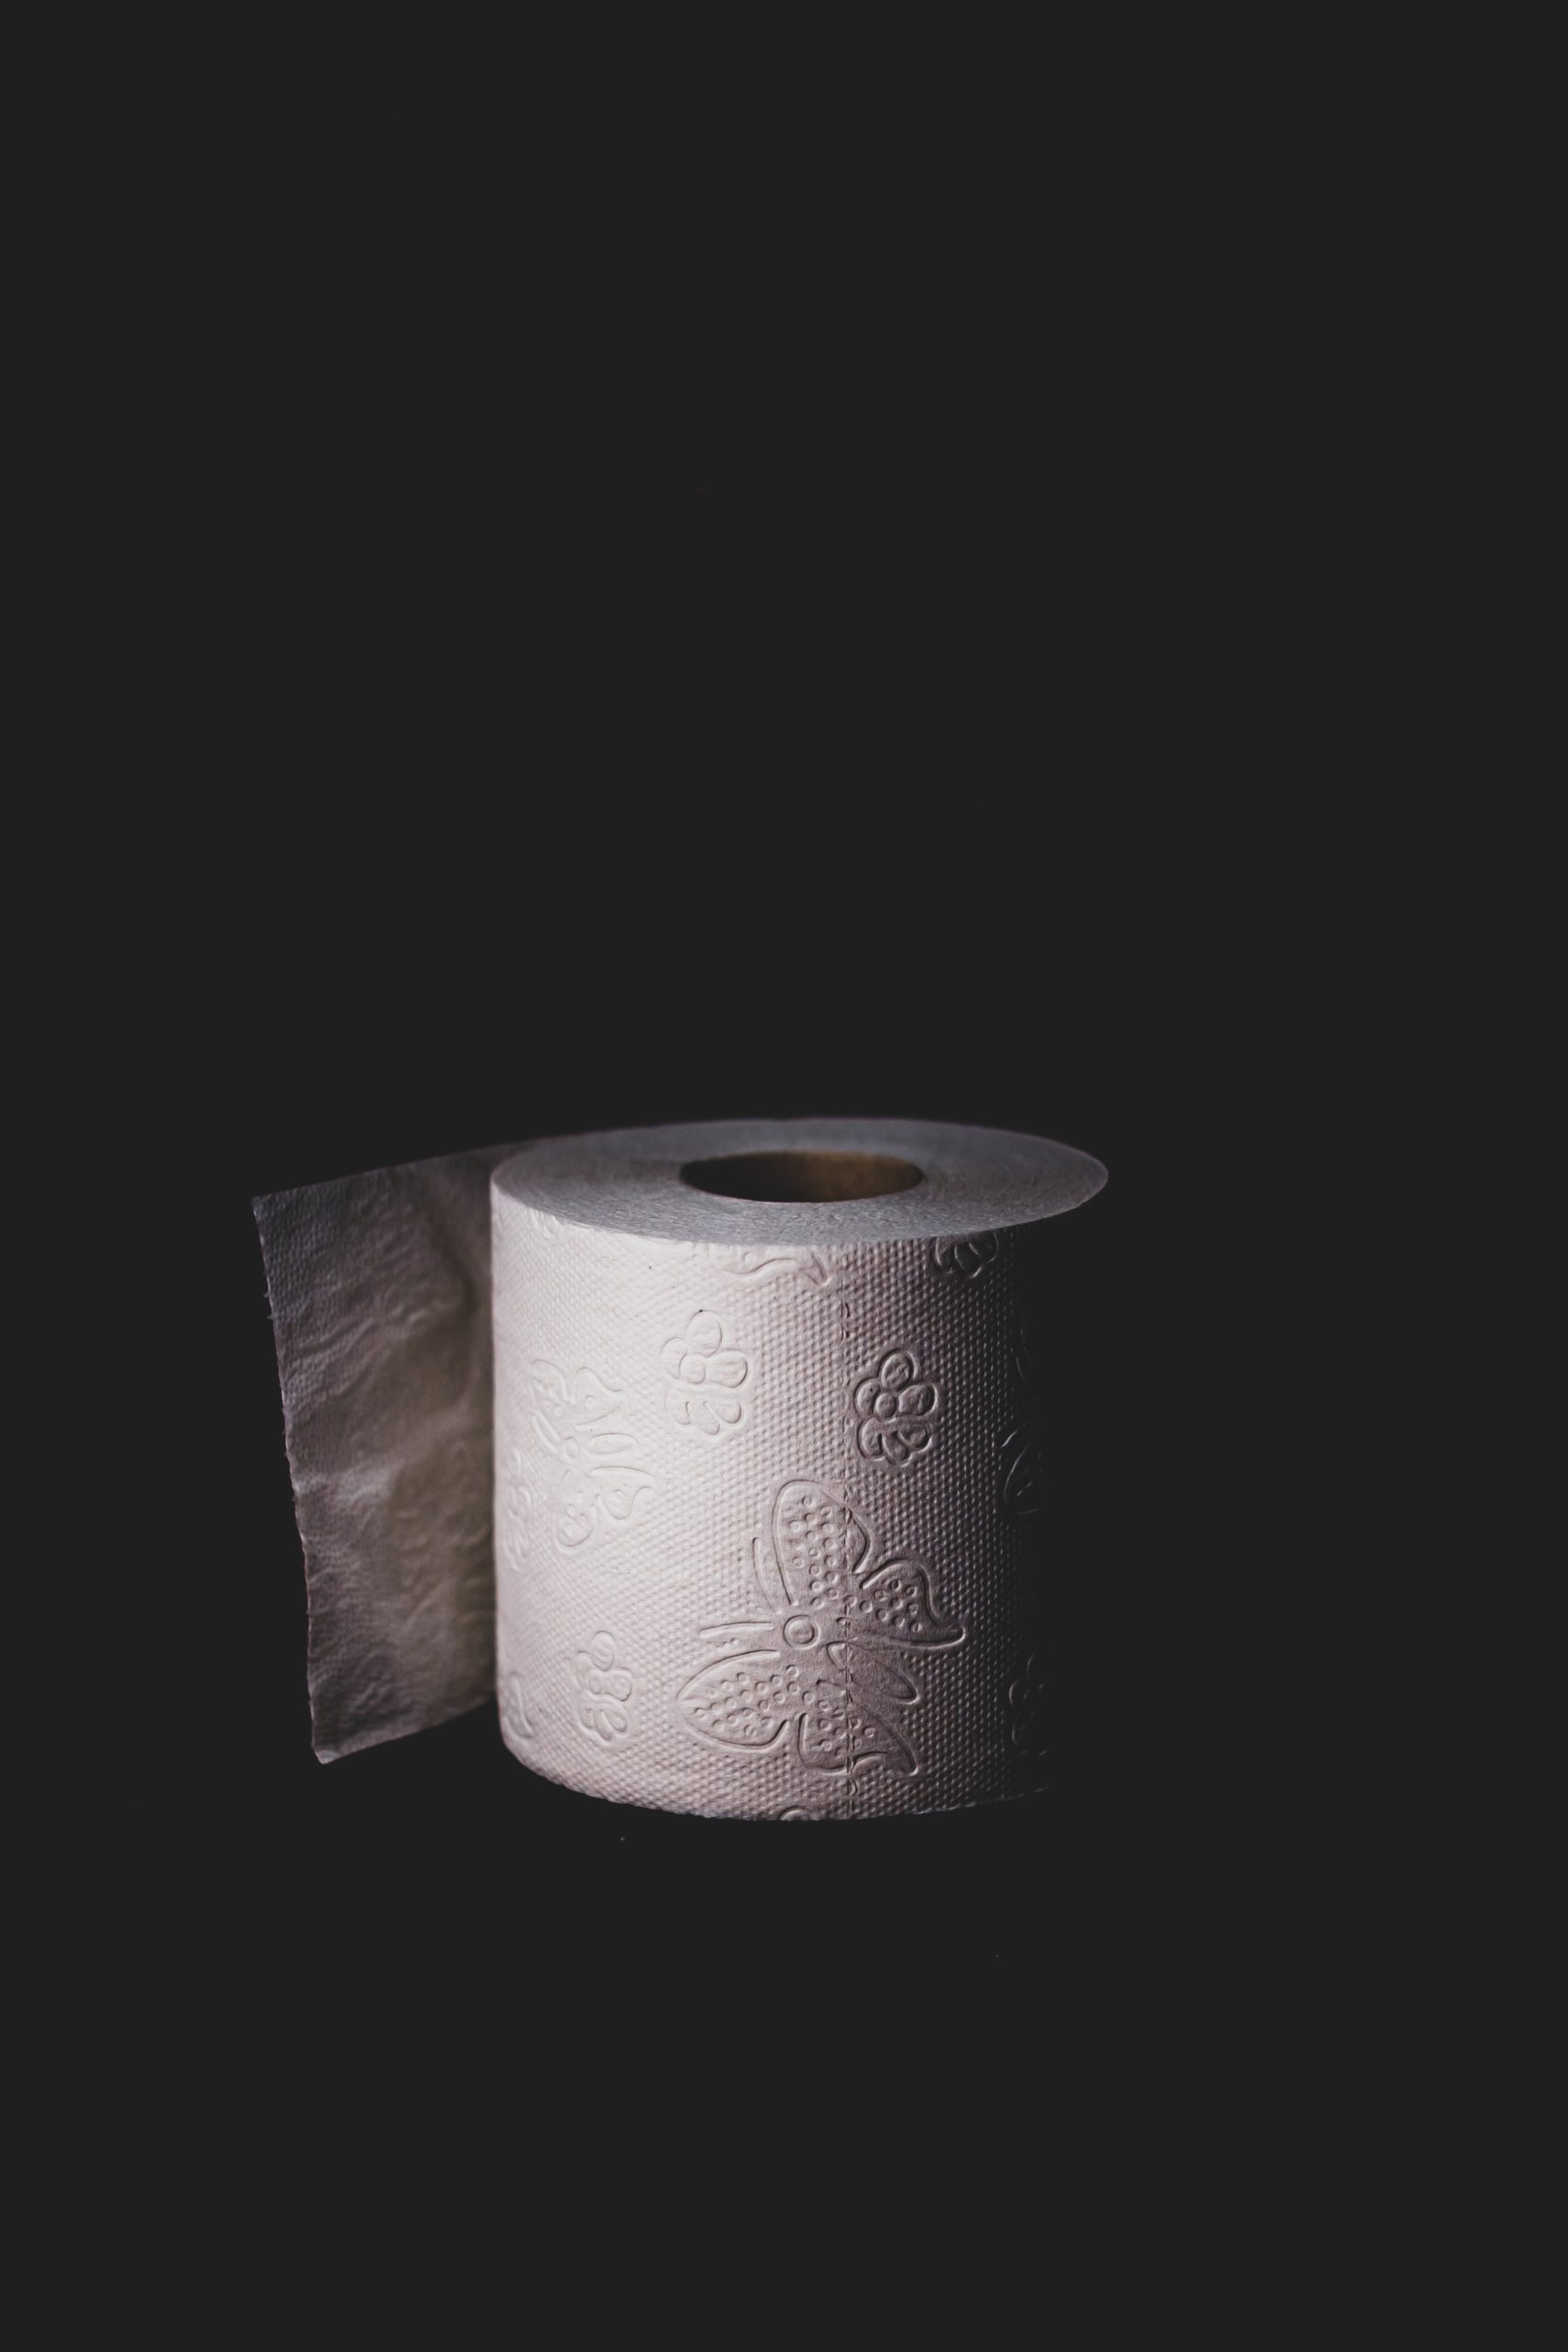 一卷厕纸在黑暗的背景与微妙的照明